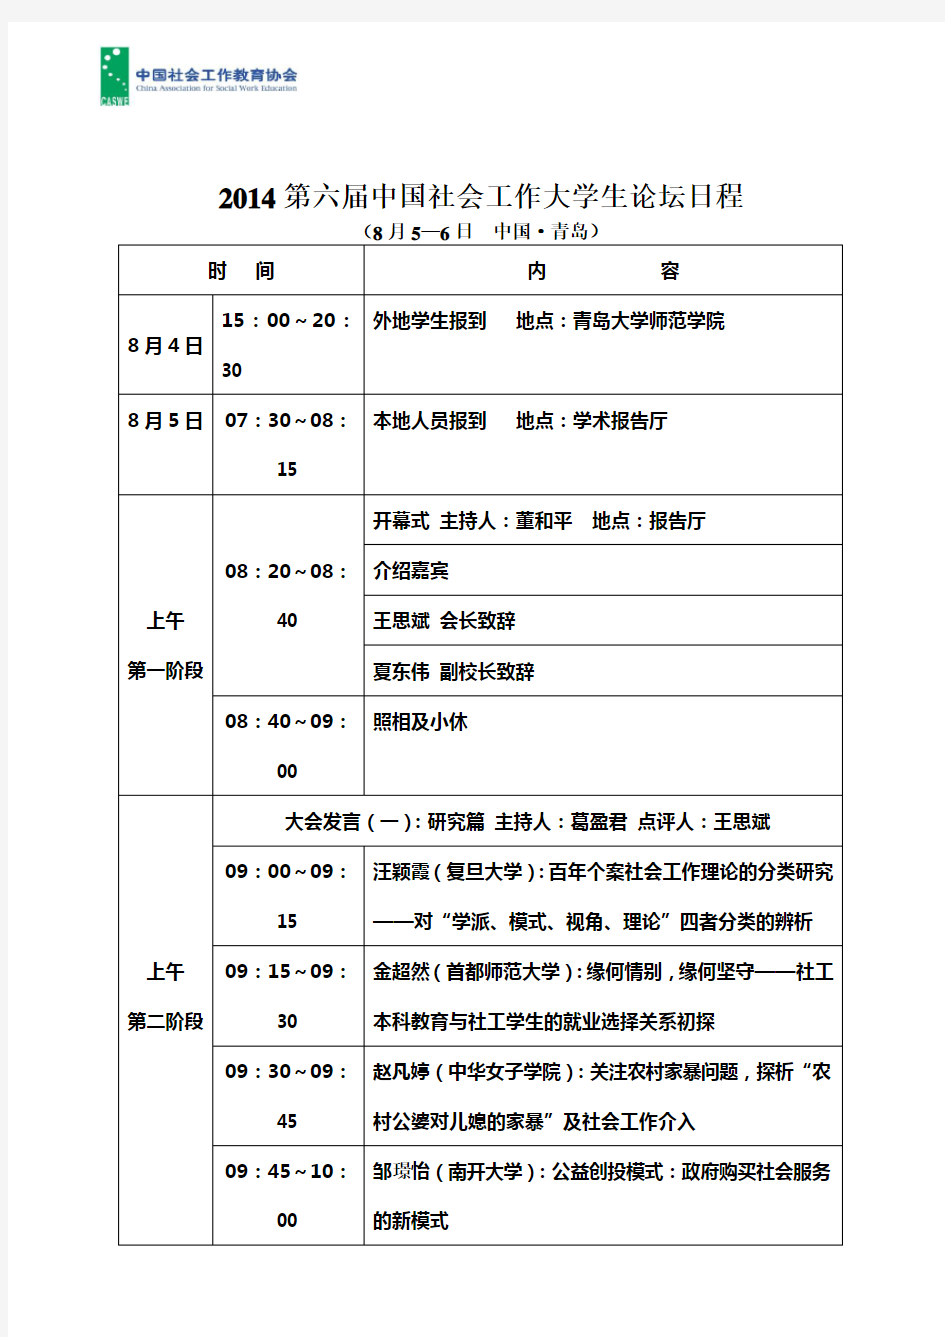 第六届中国社会工作大学生论坛日程表